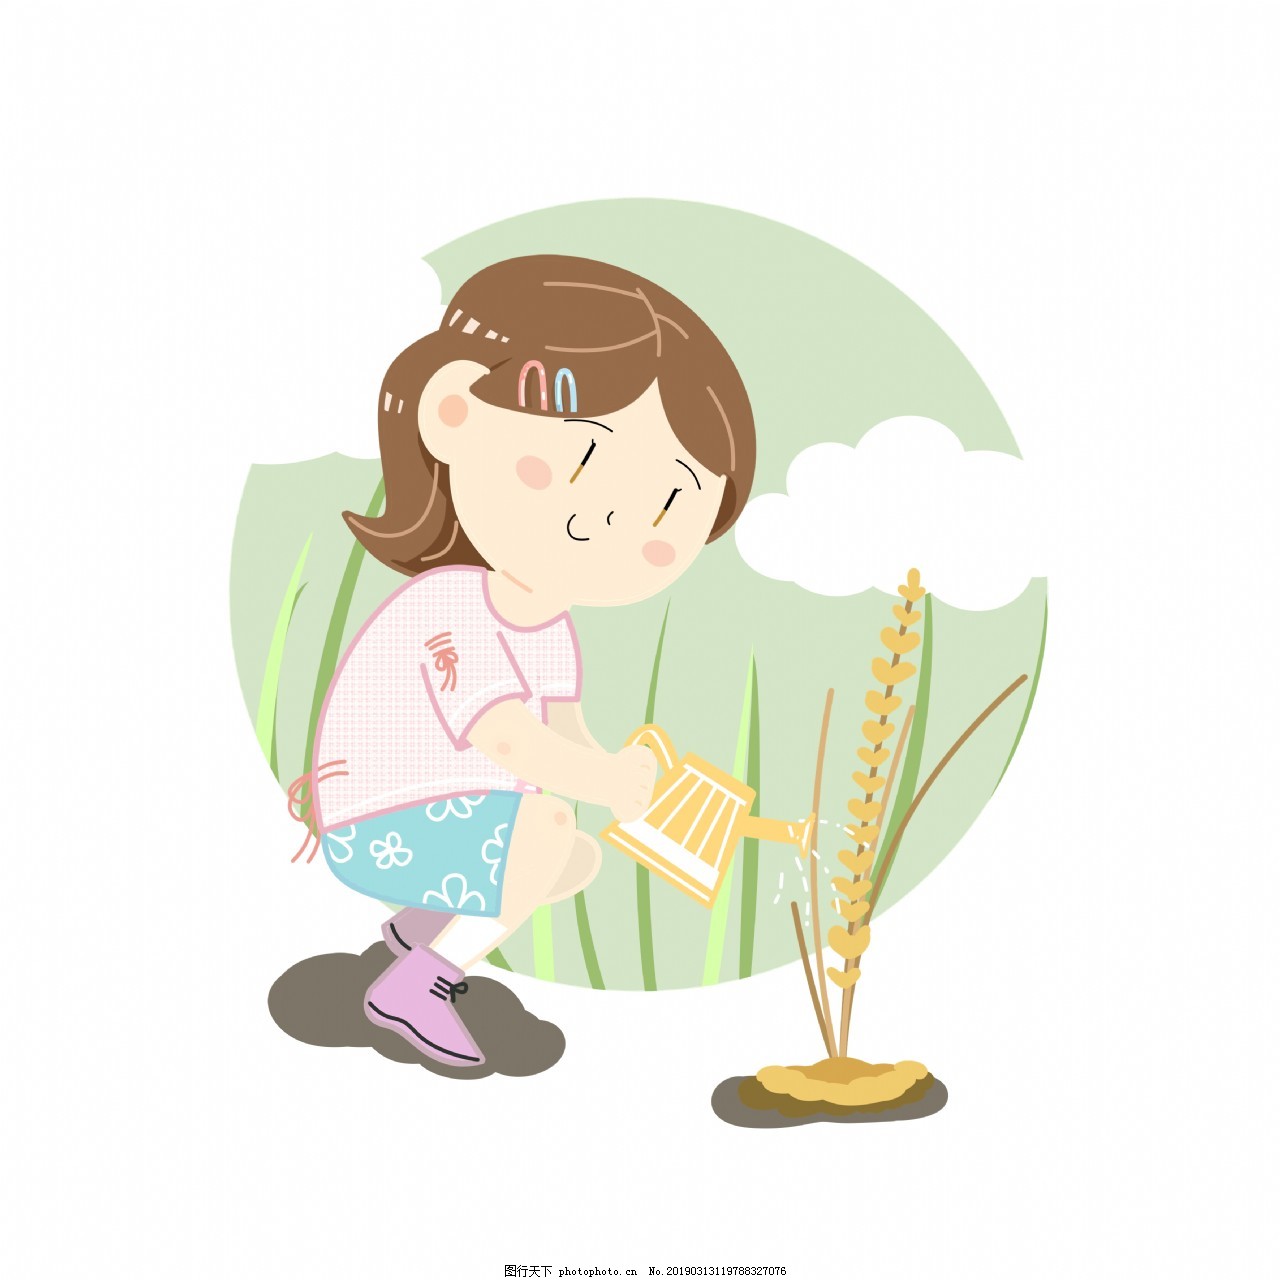 รูปArbor Day Character Illustration Watering Little Girl Grey Bucket ...